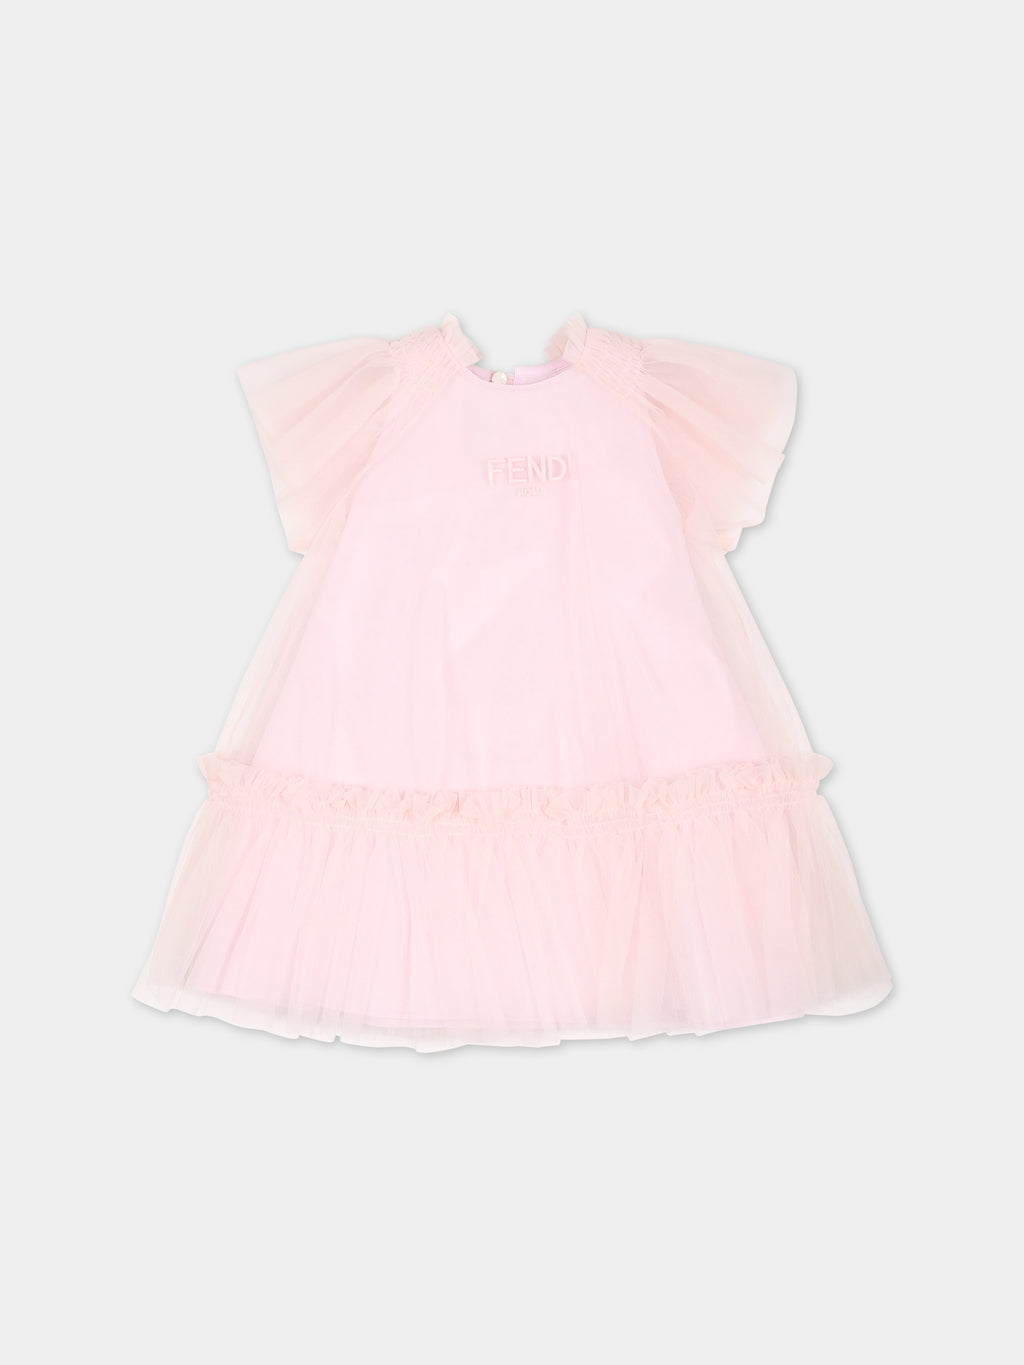 Robe rose pour bébé fille avec logo